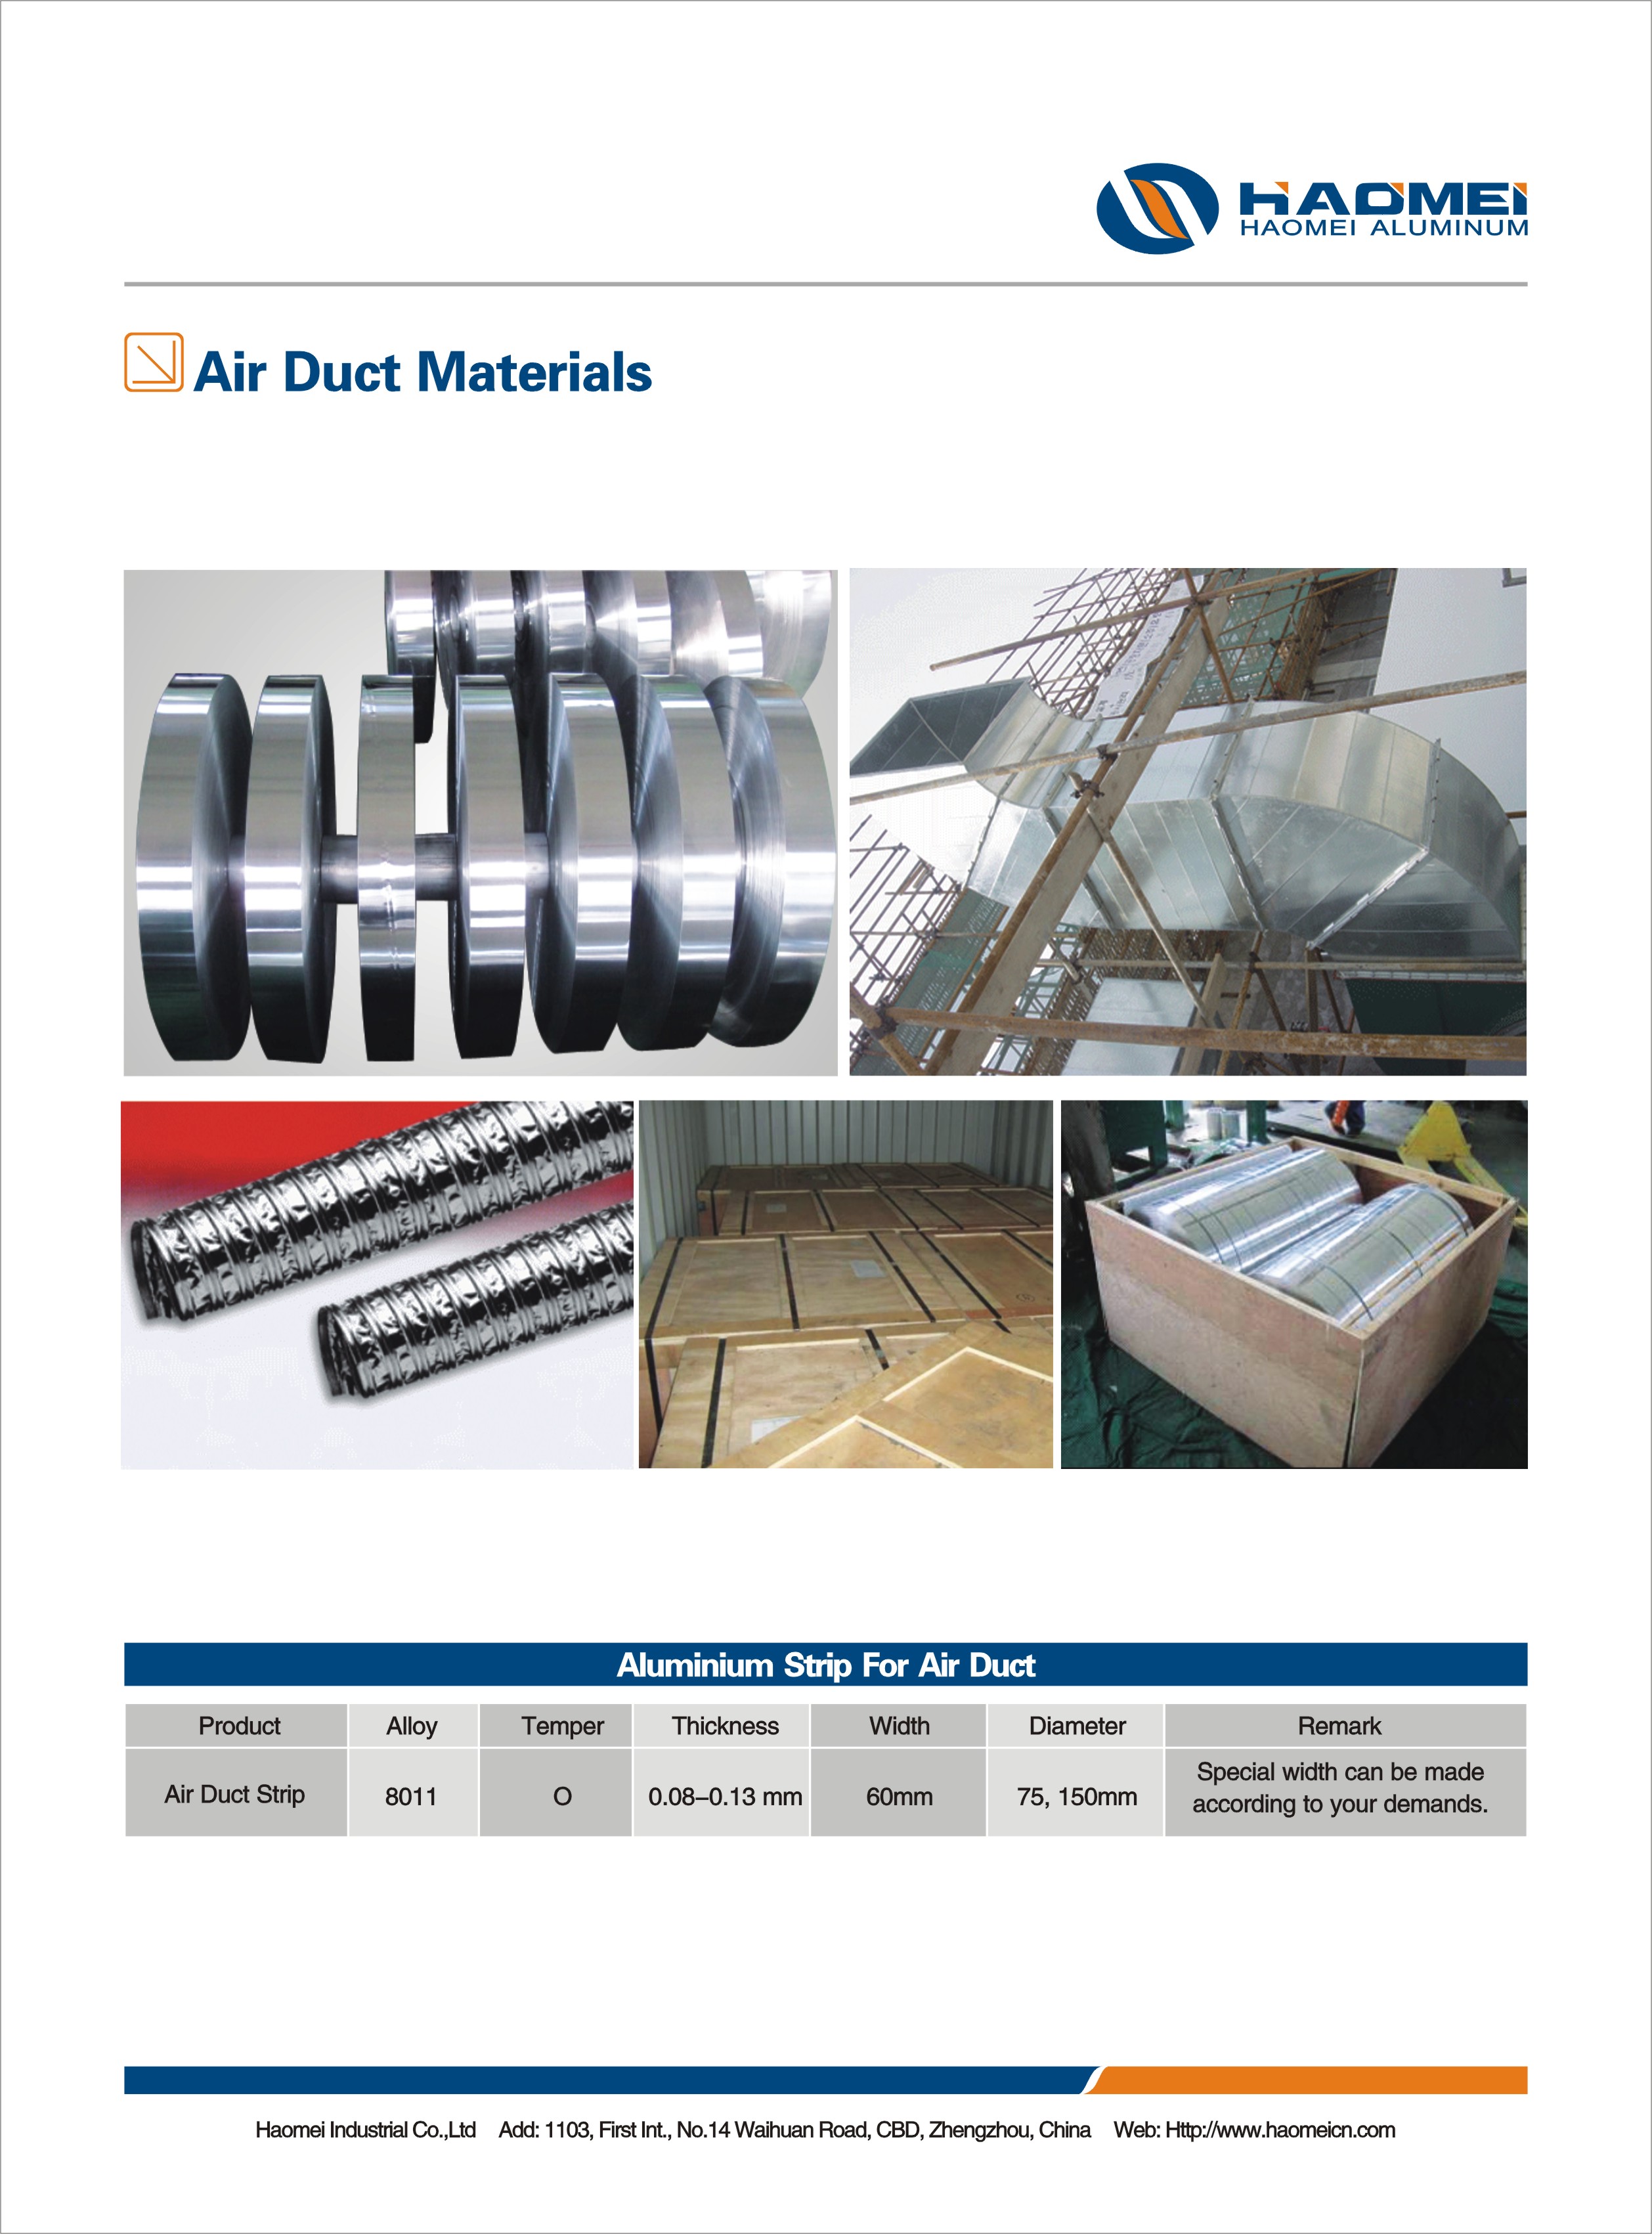 Air dust materials